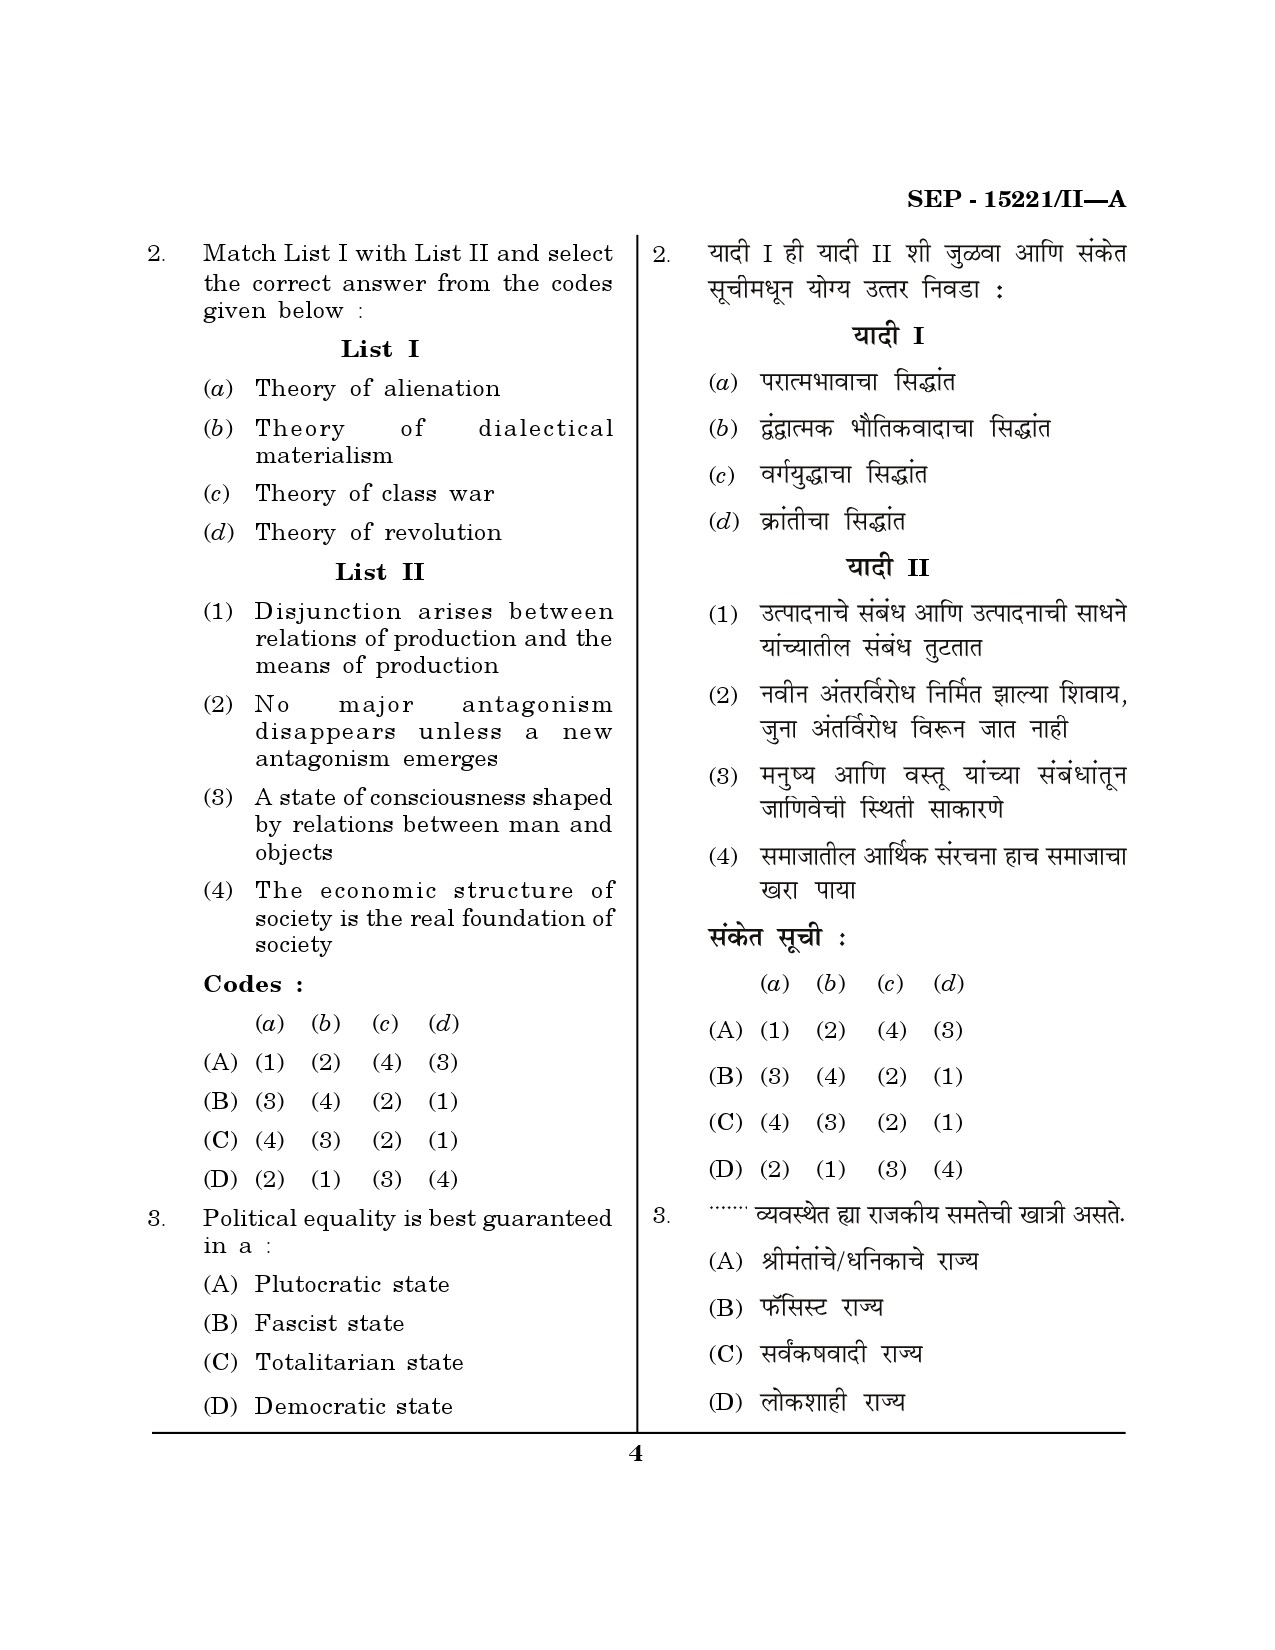 Maharashtra SET Political Science Exam Question Paper September 2021 3